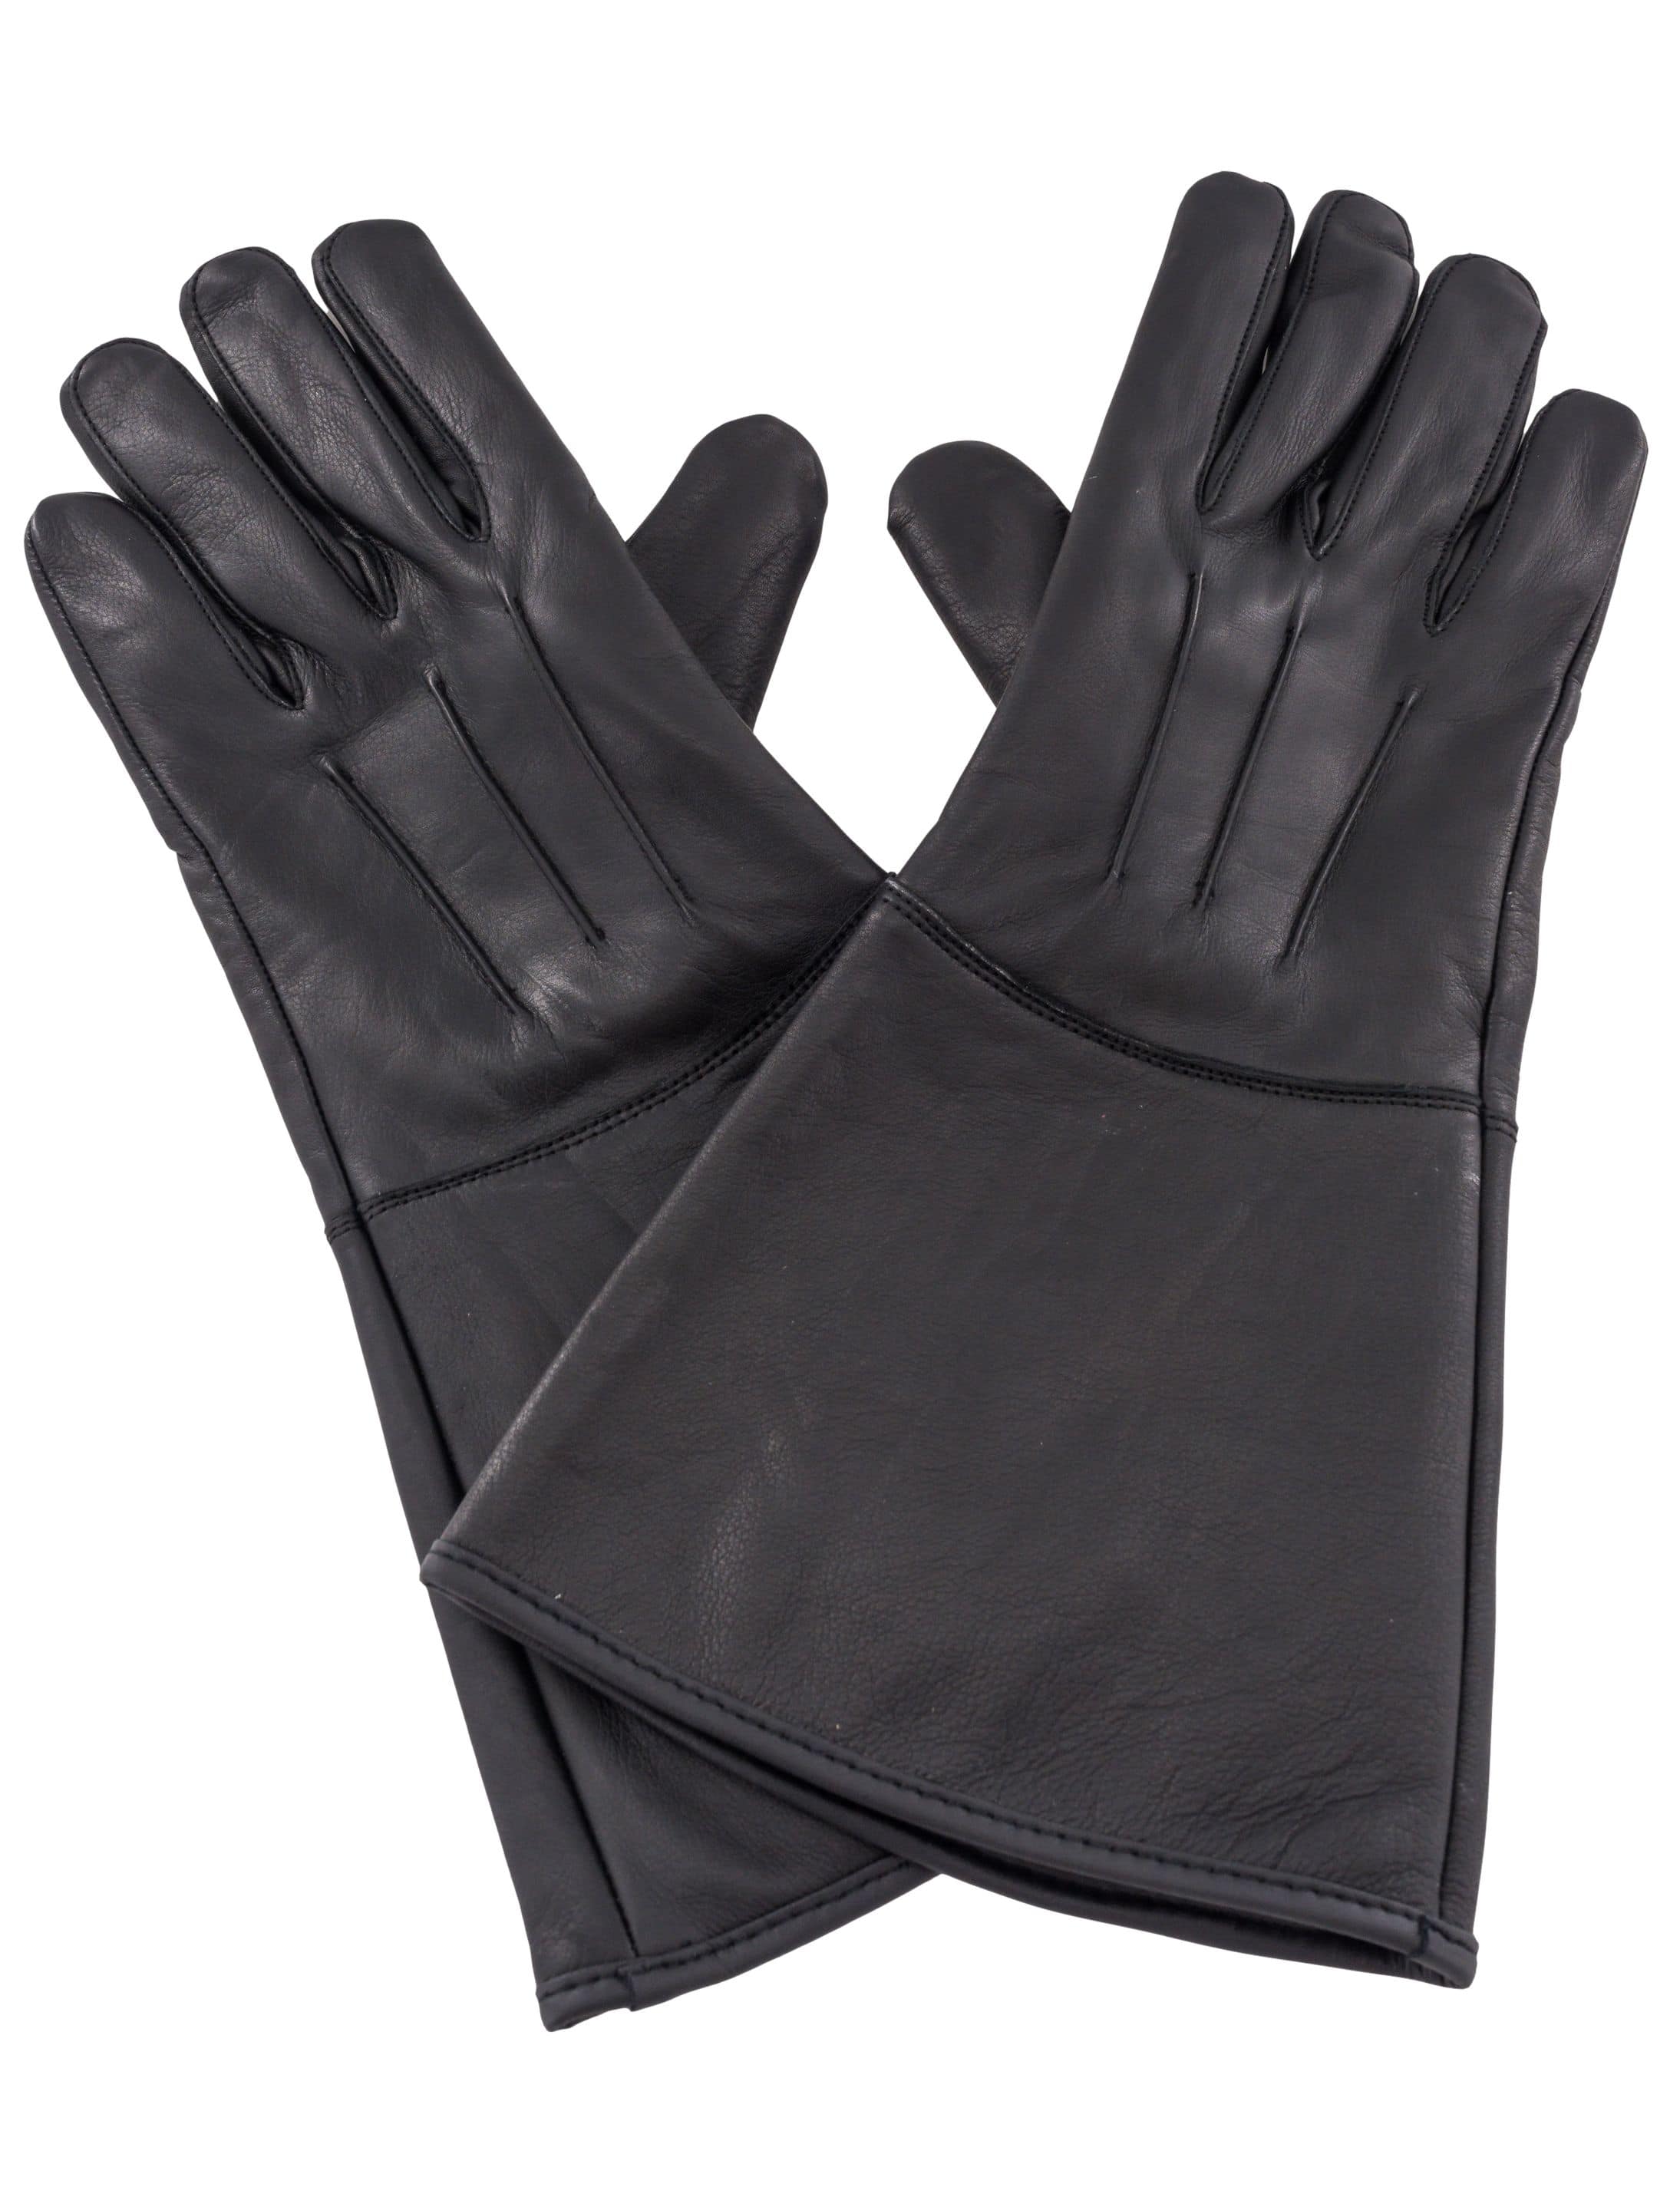 Handschuhe Echtleder schwarz XL